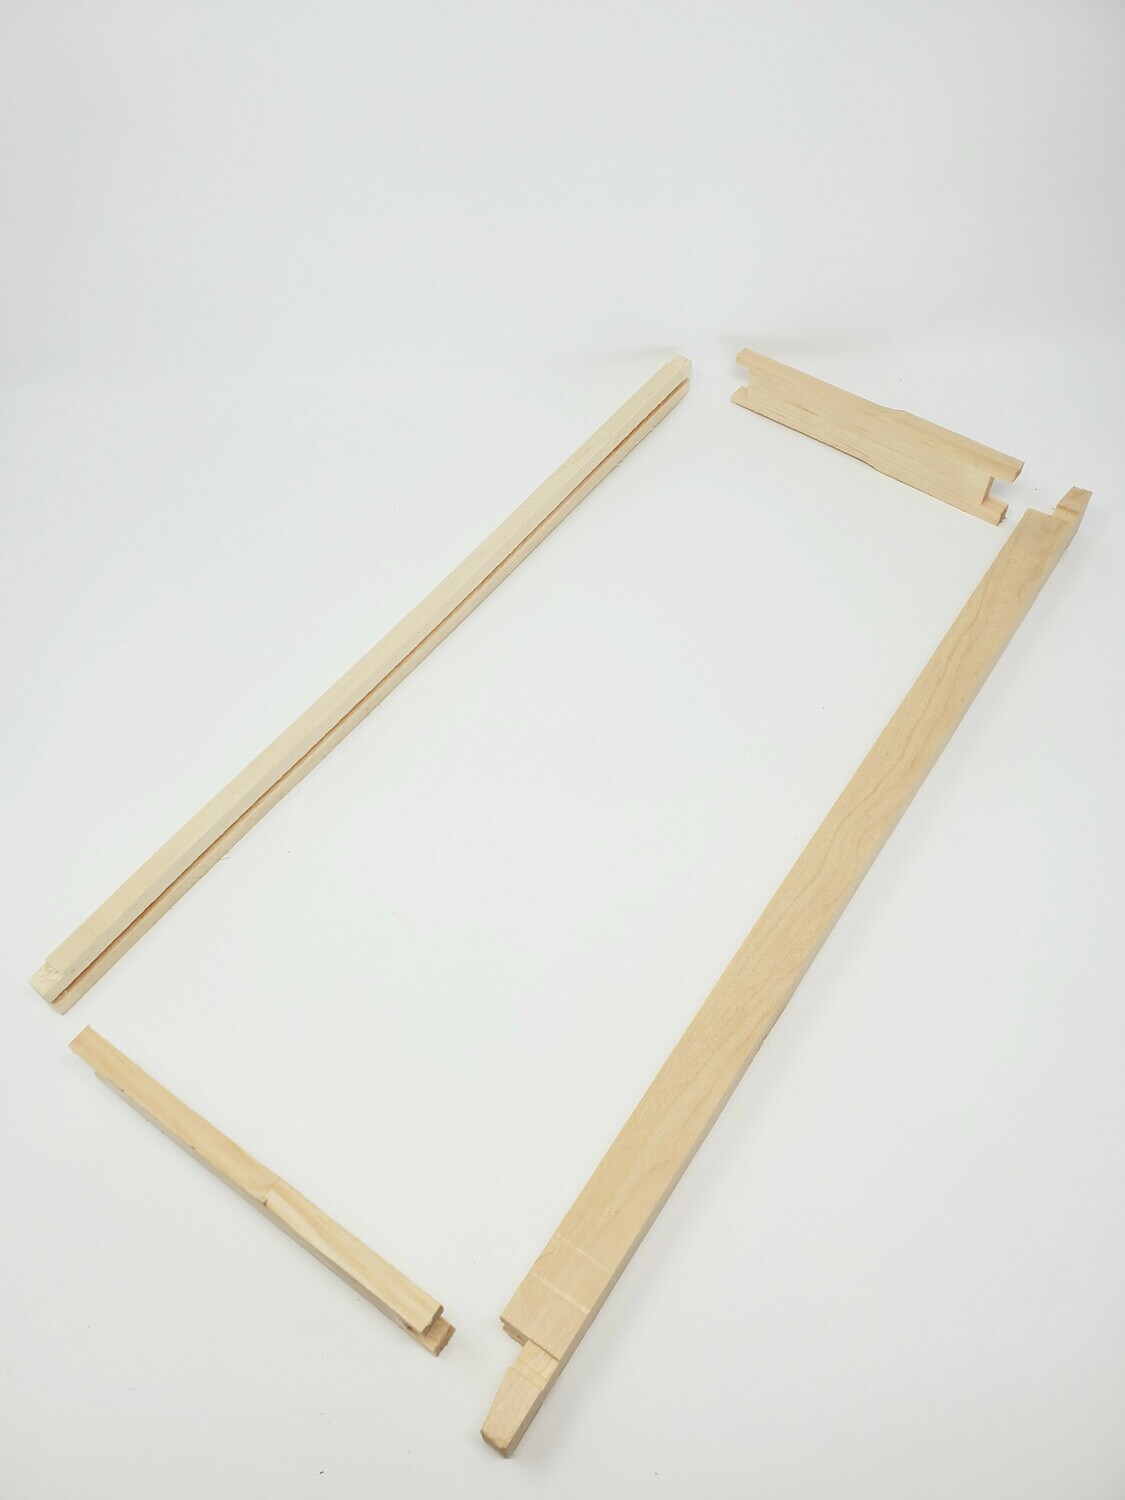 Standard wooden frames for plastic sheets